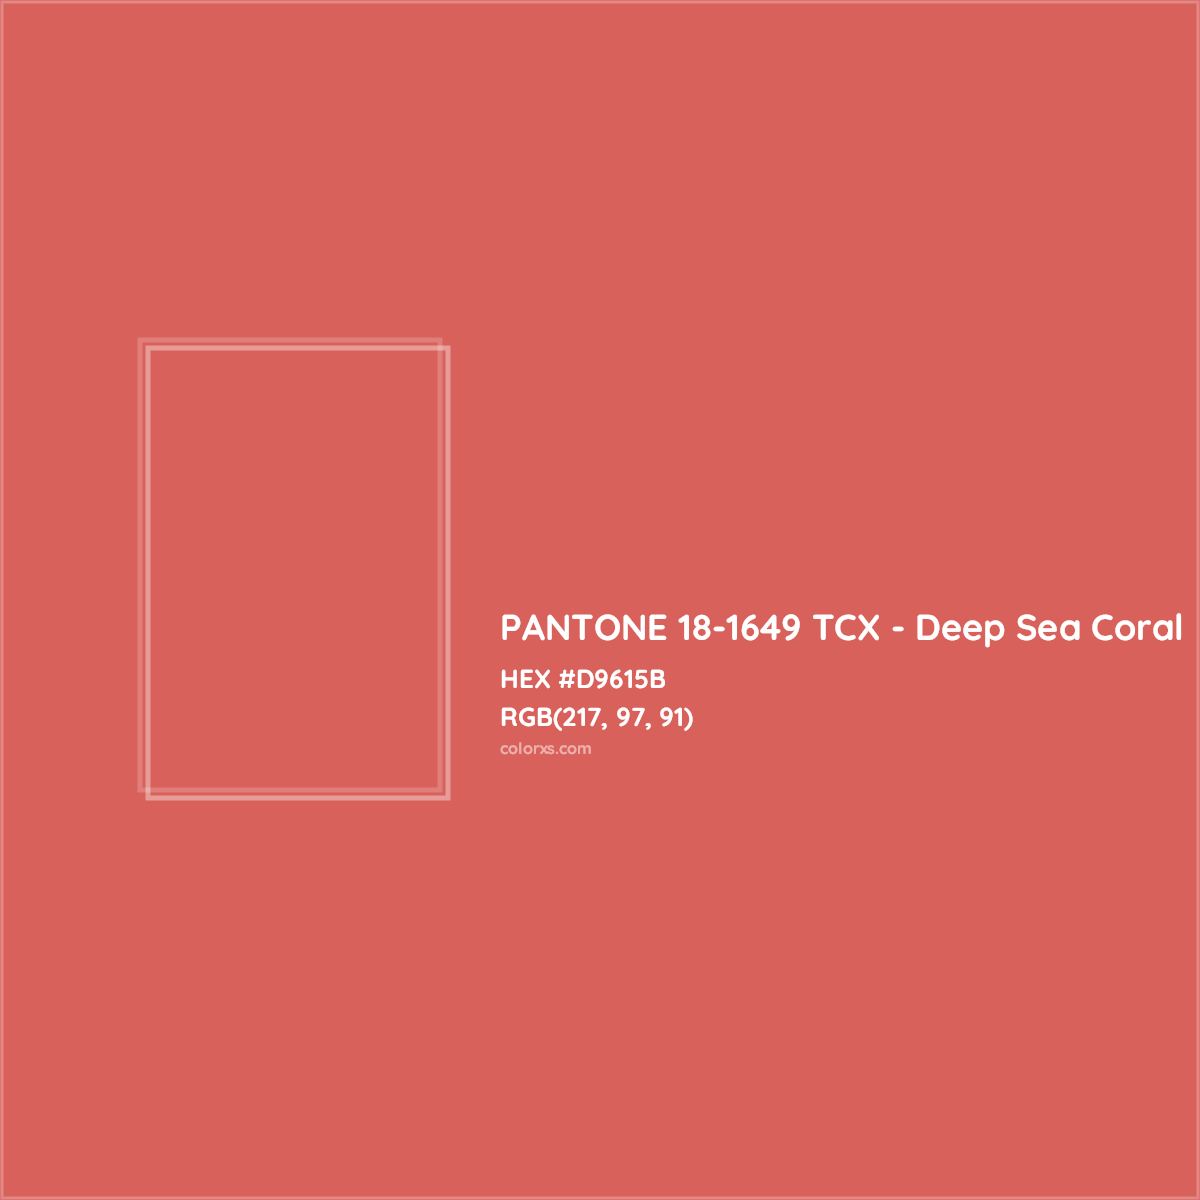 HEX #D9615B PANTONE 18-1649 TCX - Deep Sea Coral CMS Pantone TCX - Color Code